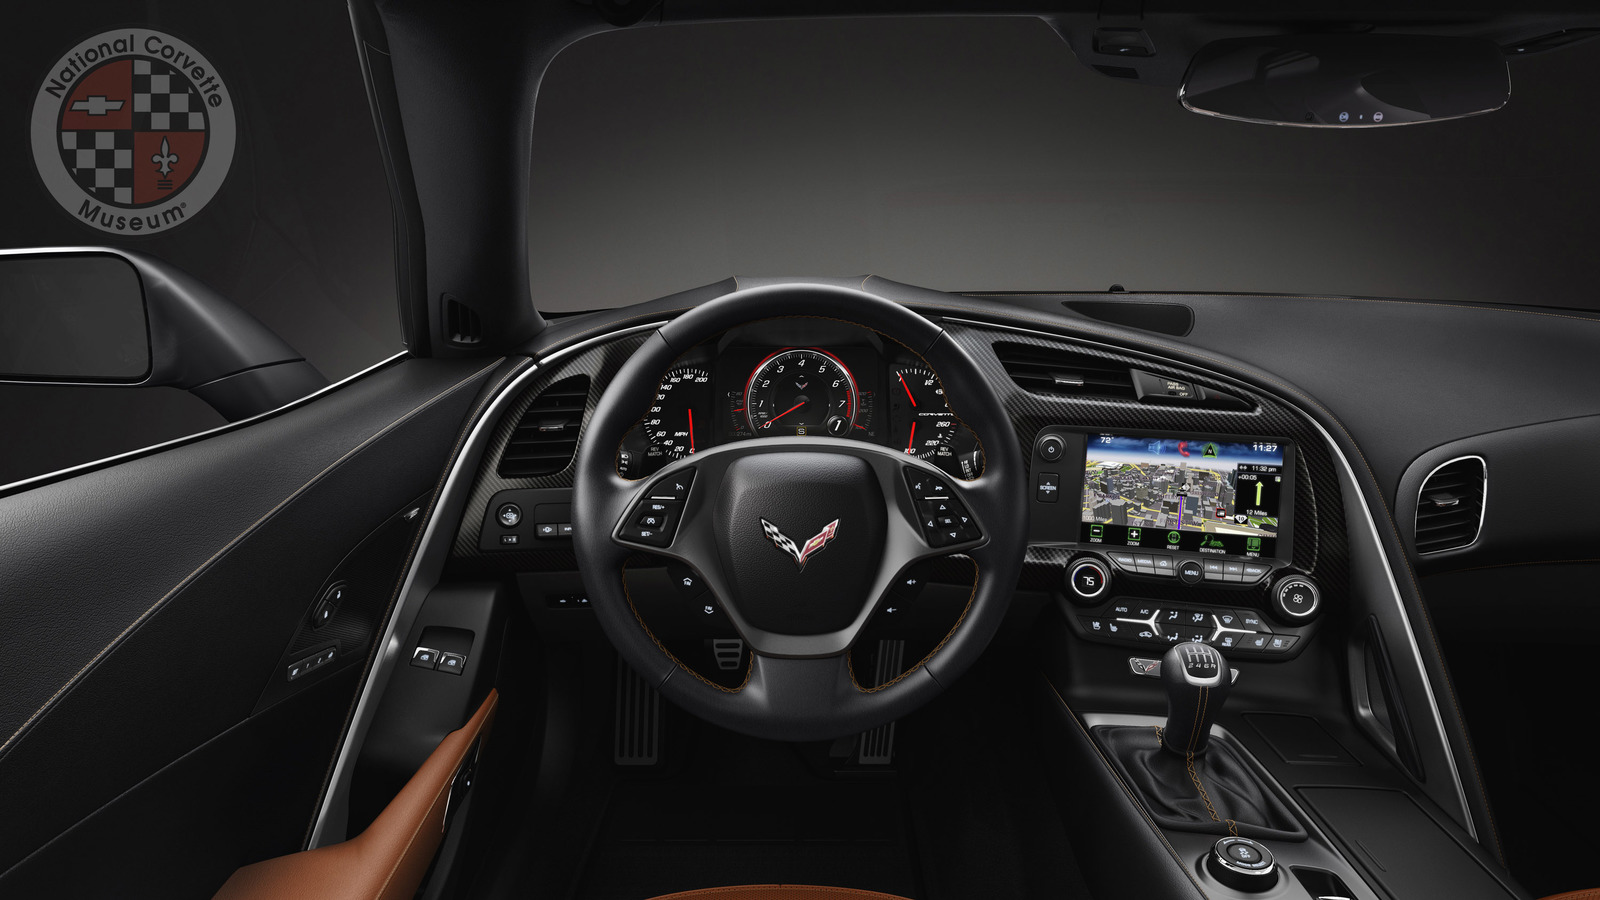 2014-Chevrolet-Corvette-dash.jpg